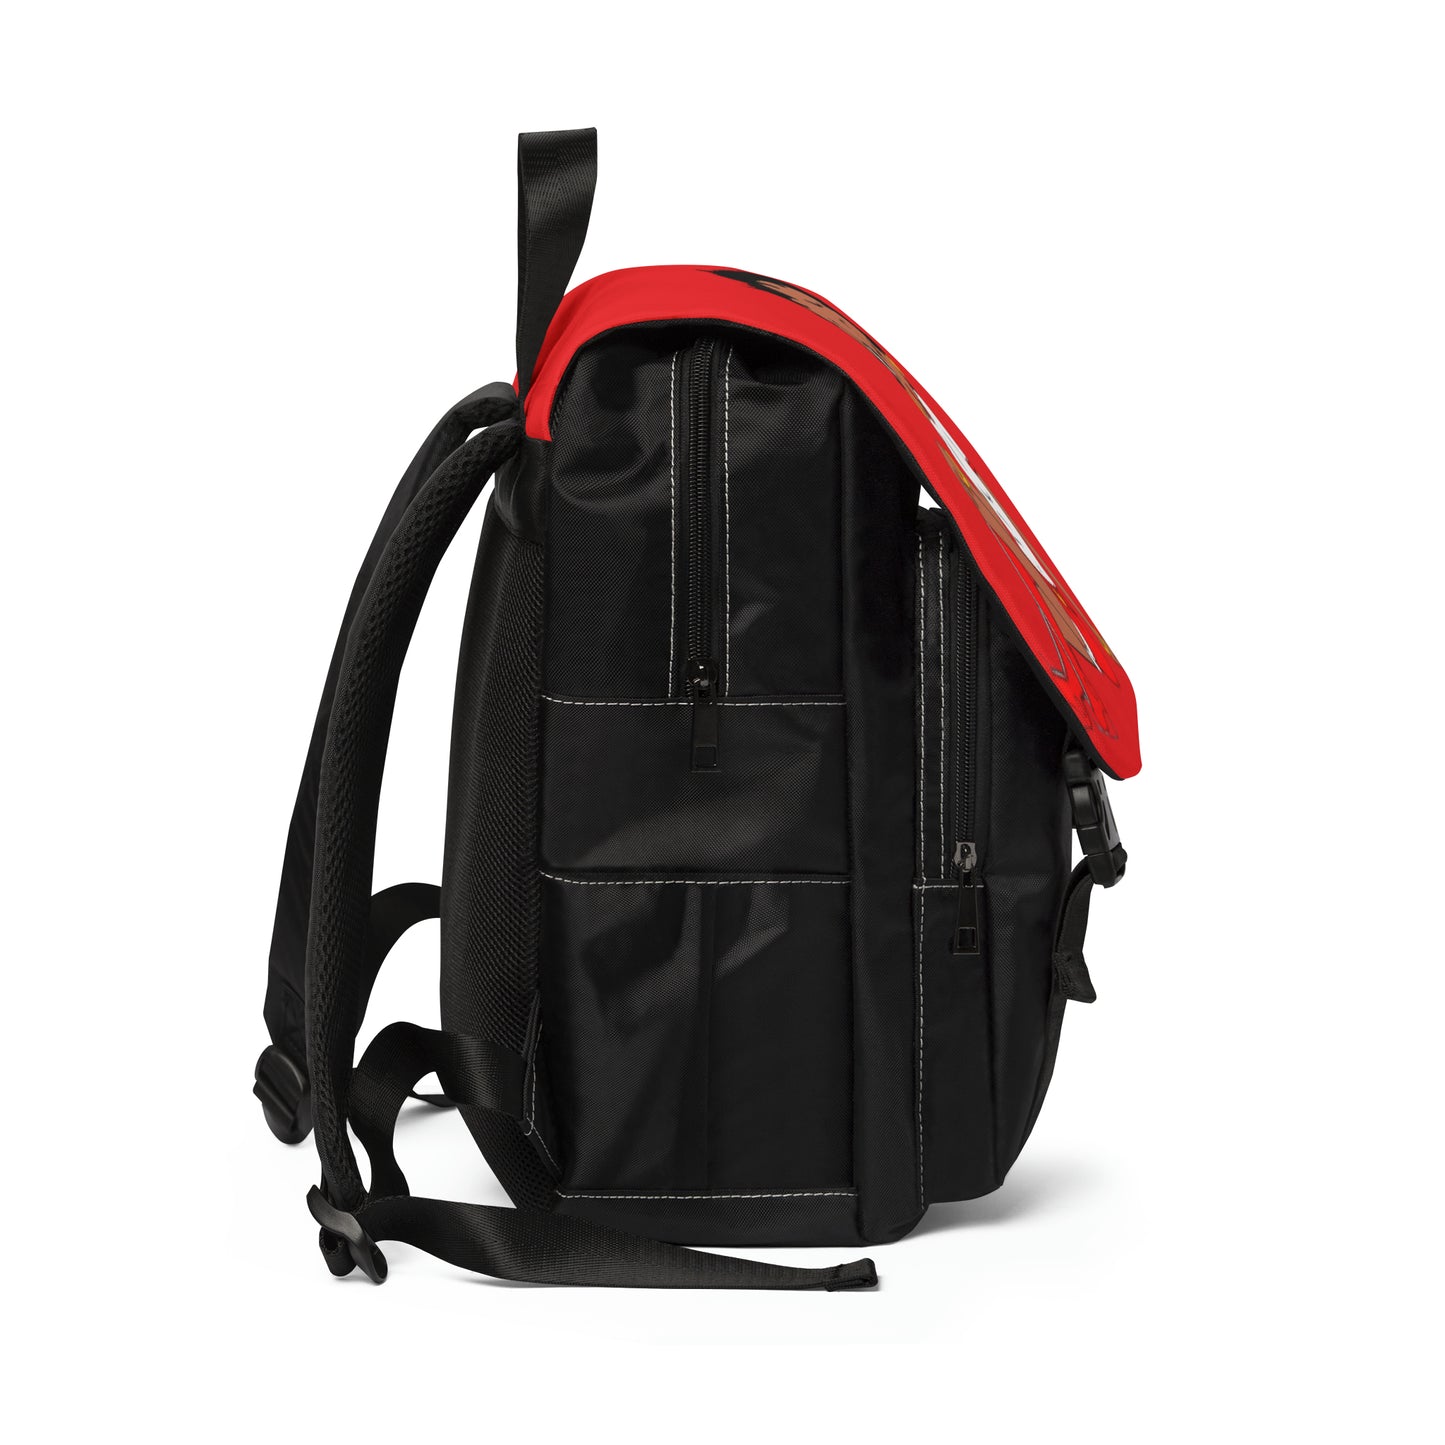 R&RH Unisex Casual Shoulder Backpack